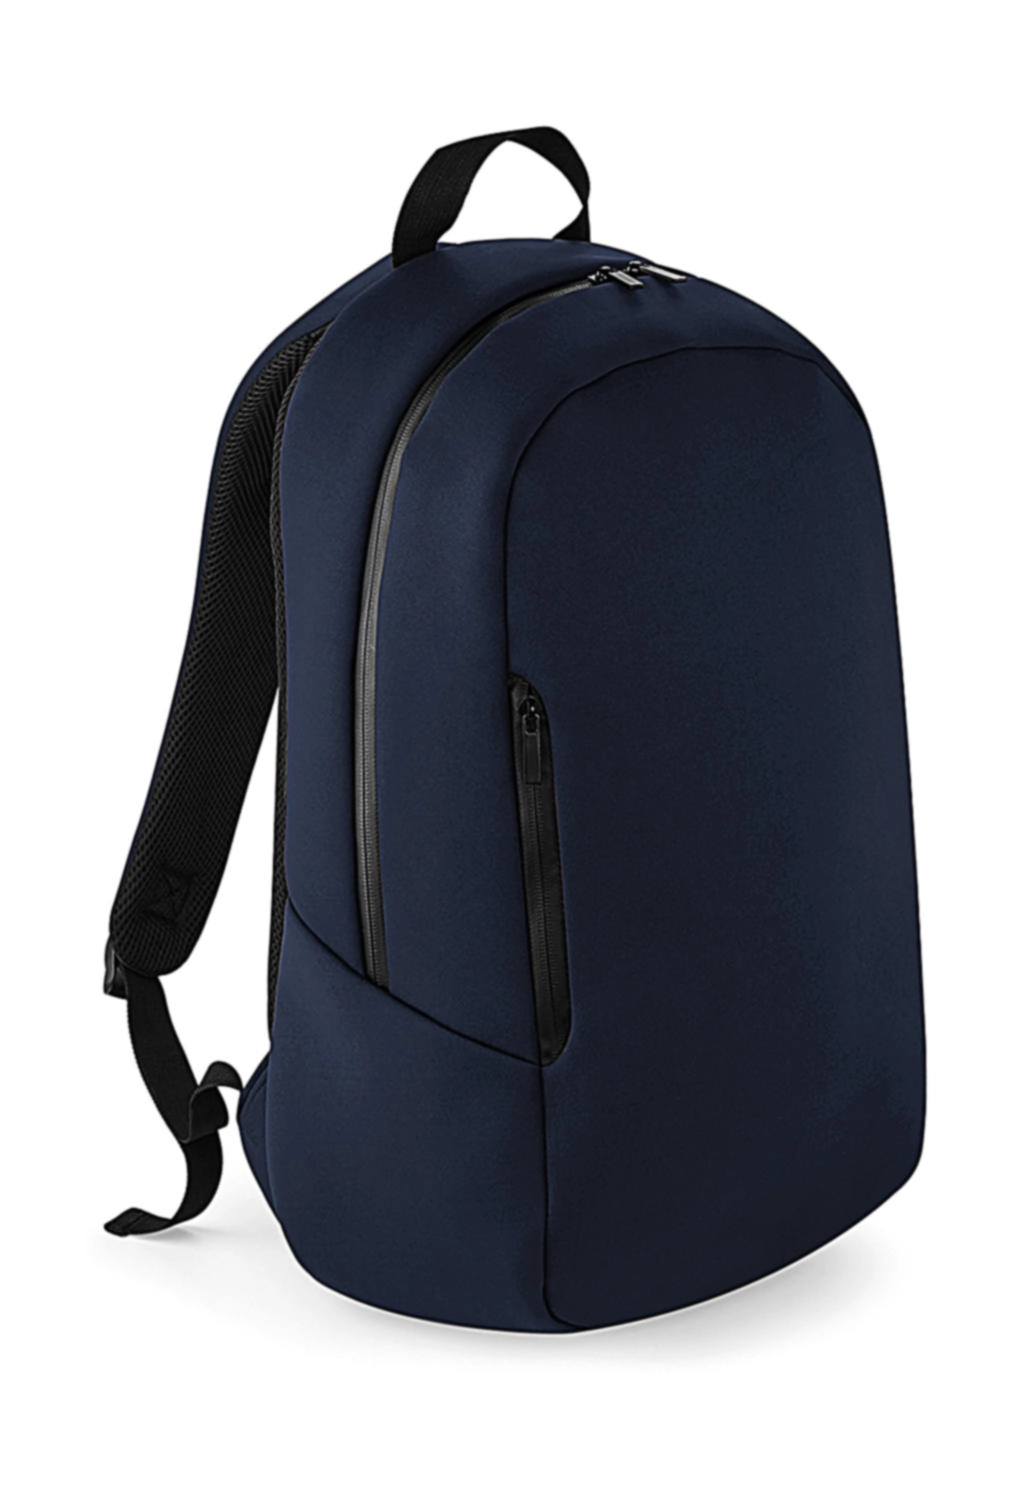 Scuba Backpack zum Besticken und Bedrucken in der Farbe Navy mit Ihren Logo, Schriftzug oder Motiv.